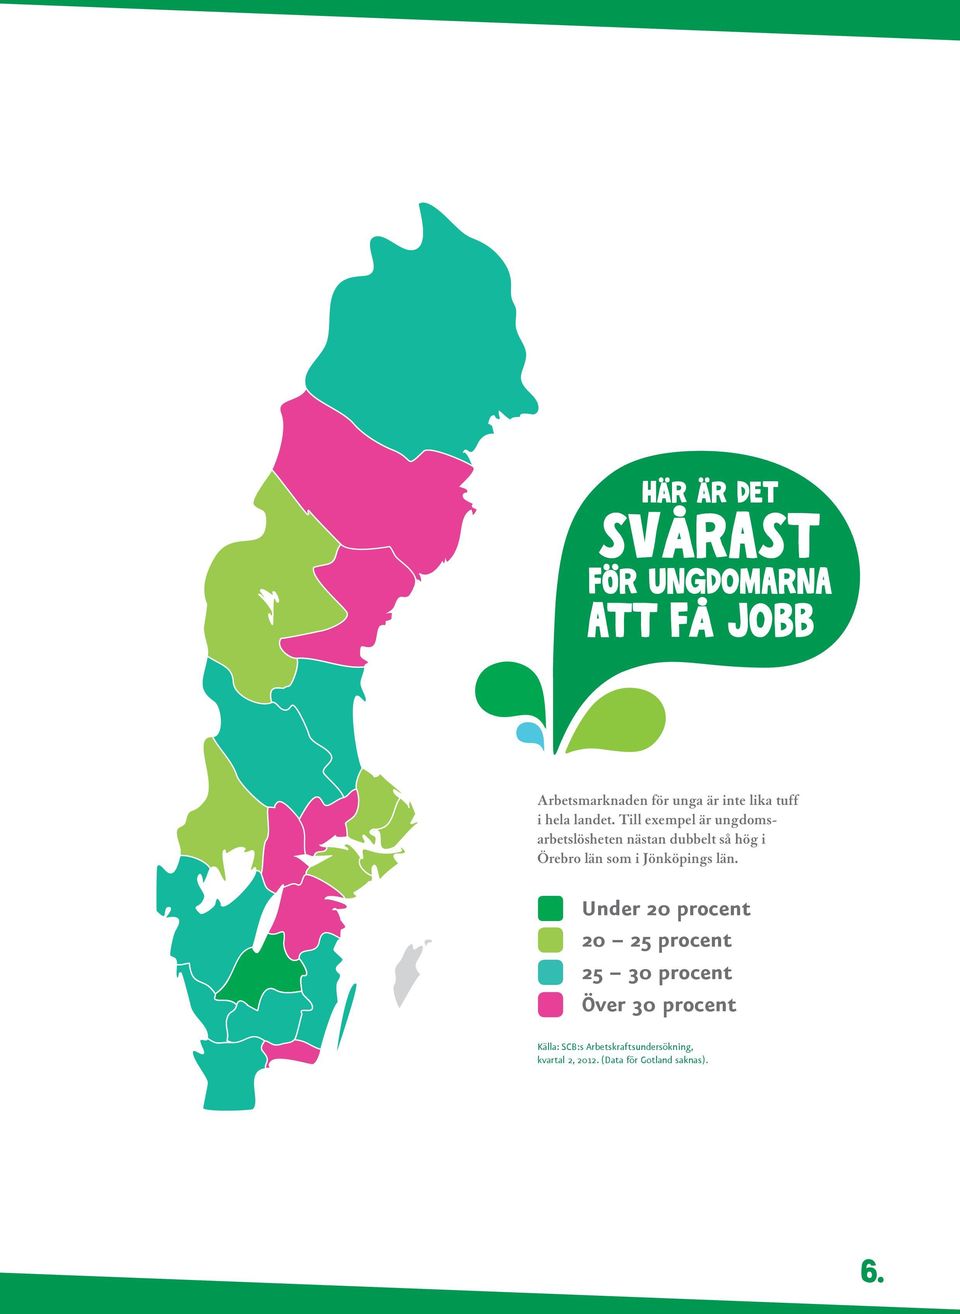 Till exempel är ungdomsarbetslösheten nästan dubbelt så hög i Örebro län som i